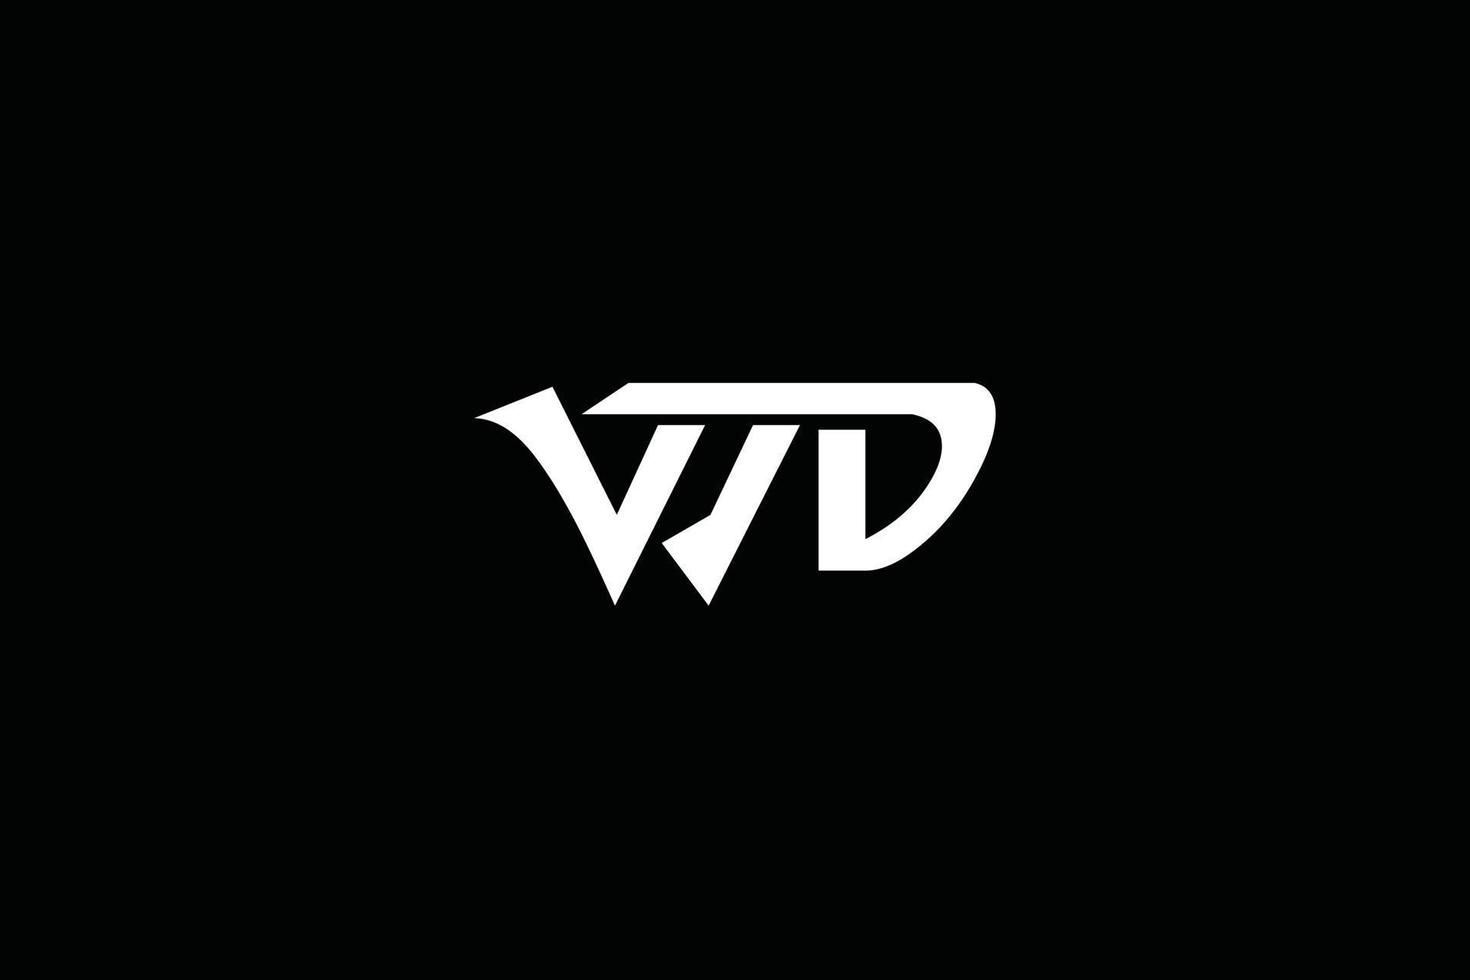 diseño del logotipo de la letra wd. ilustración de vector de icono de letras wd moderno creativo.